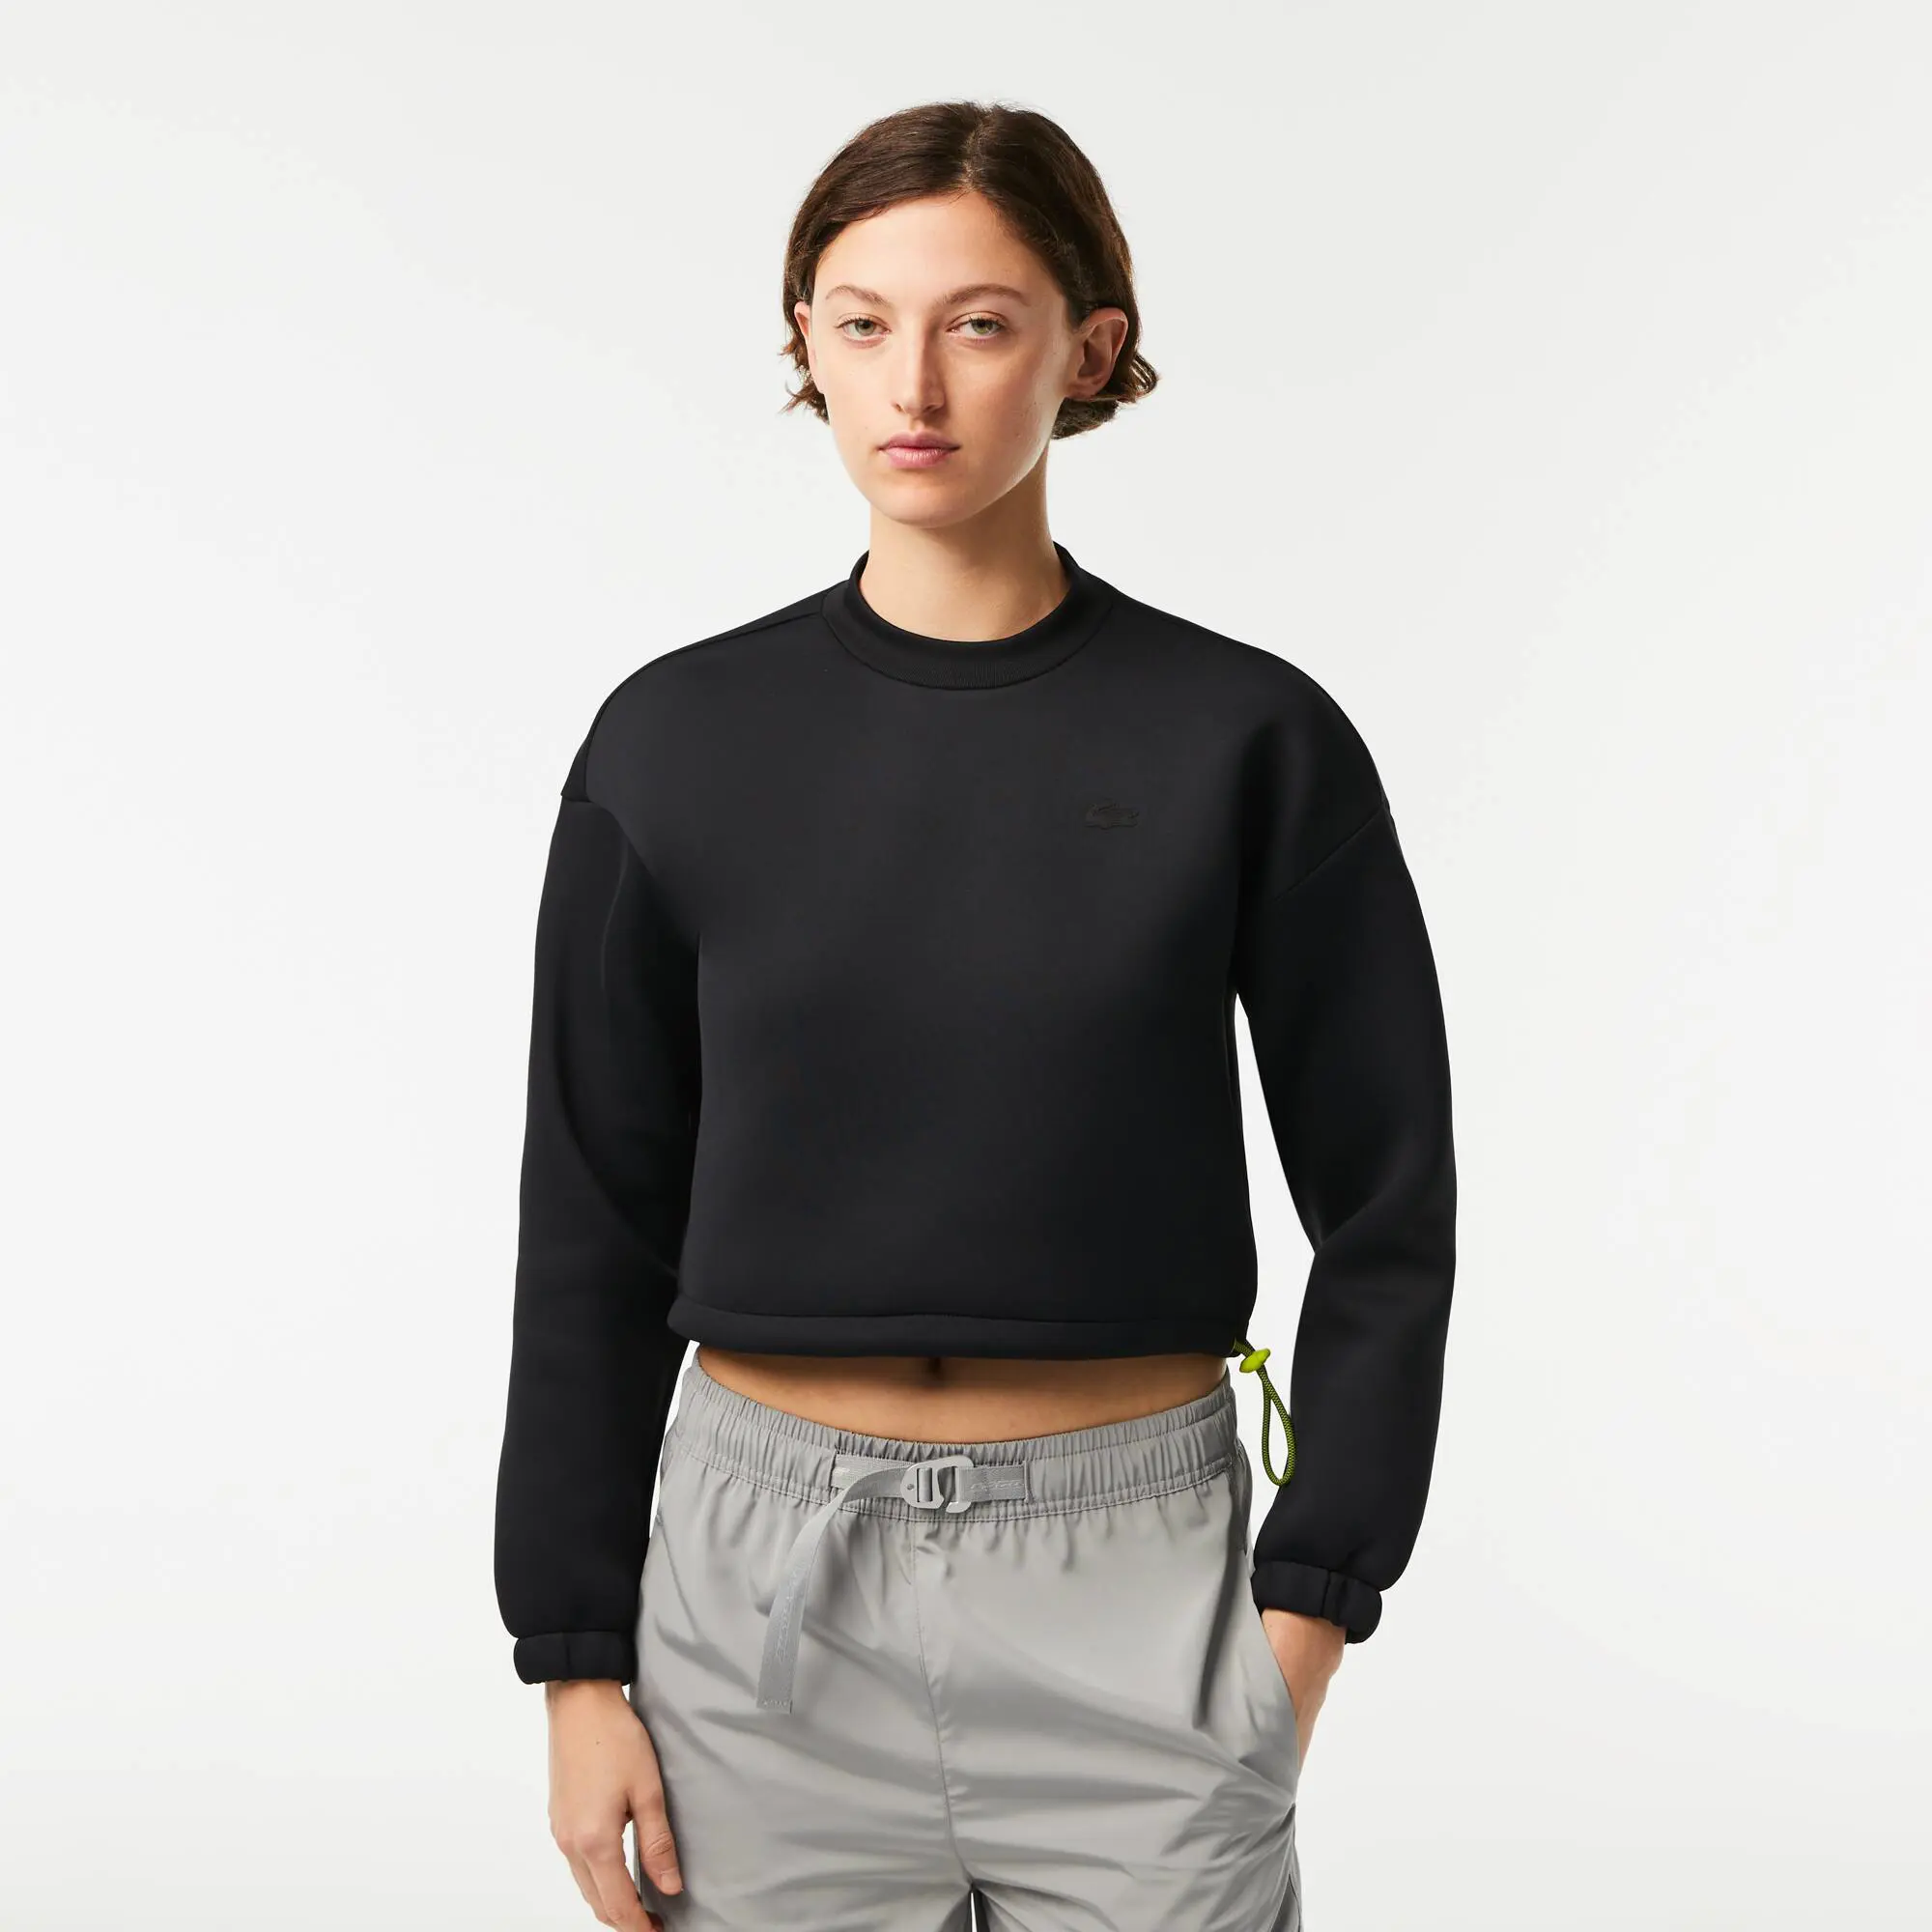 Lacoste Women's Lacoste SPORT Loose Fit Drawstring Sweatshirt. 1